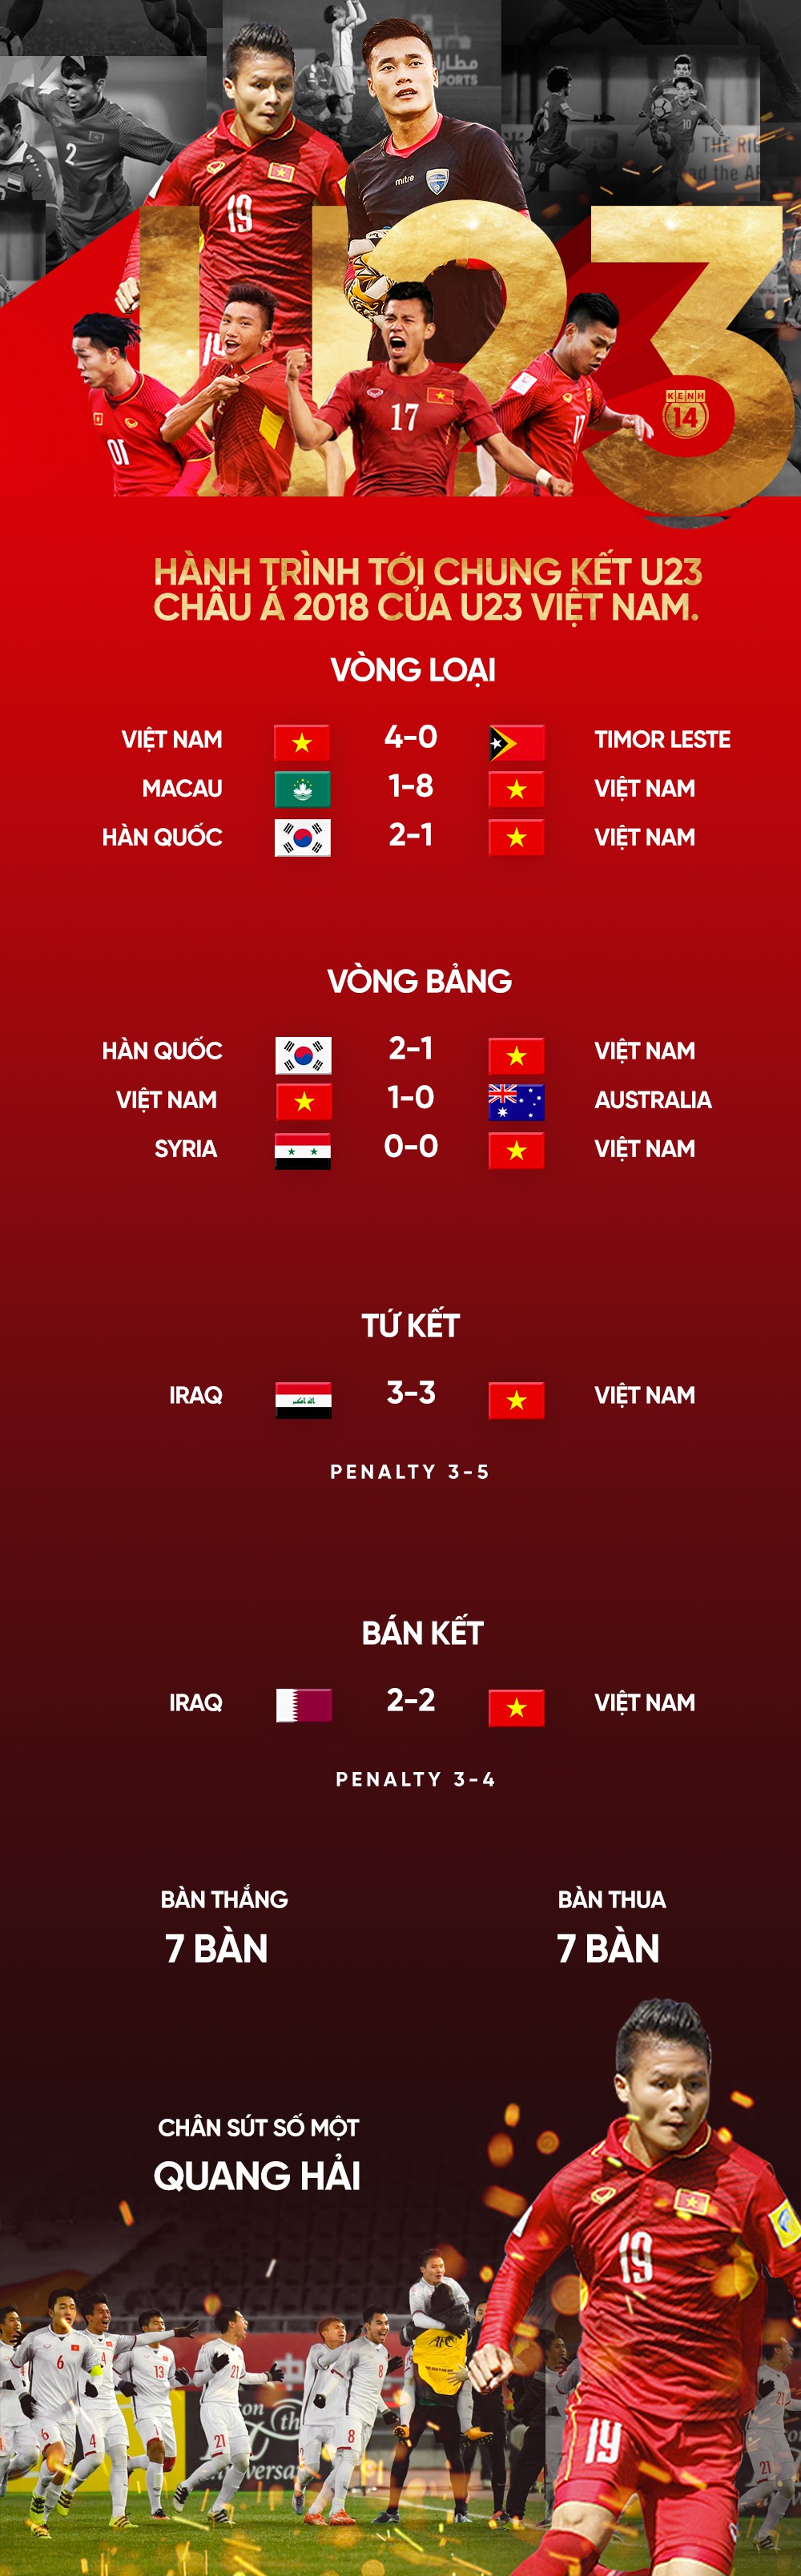 U23 Việt Nam và hành trình cảm xúc vào chung kết giải U23 châu Á - Ảnh 1.